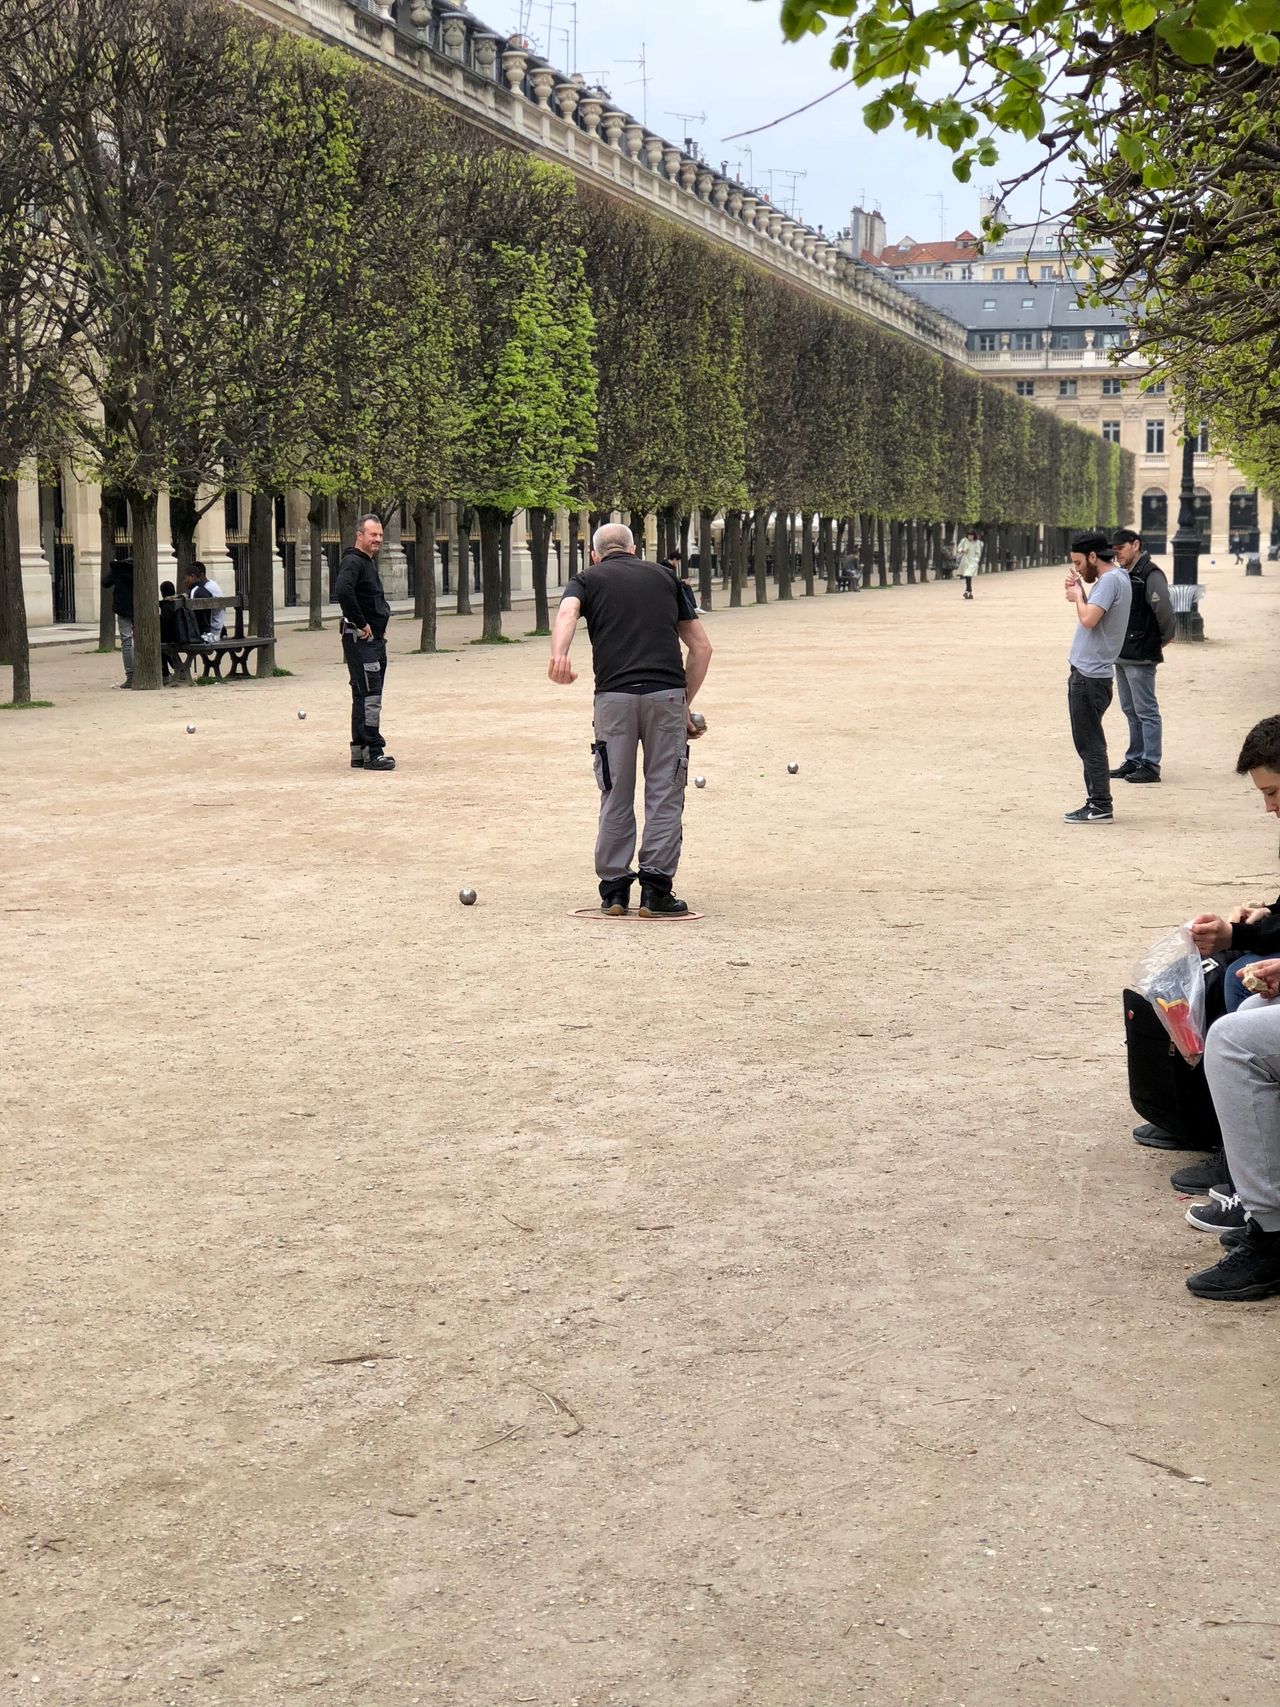 My Last Day in Paris